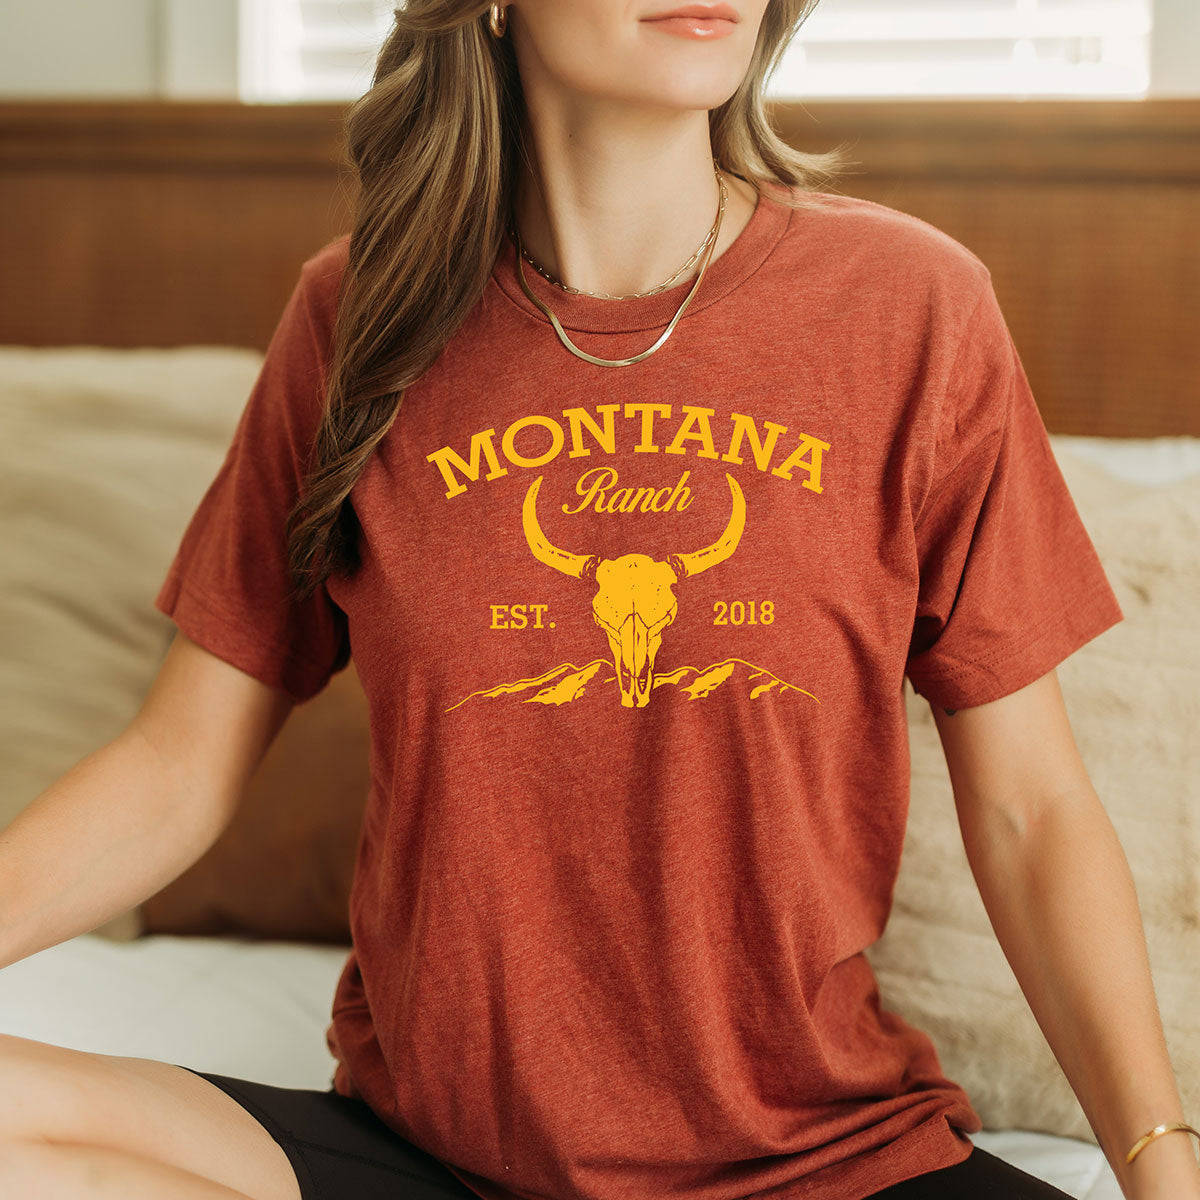 Montana Ranch T-Shirt